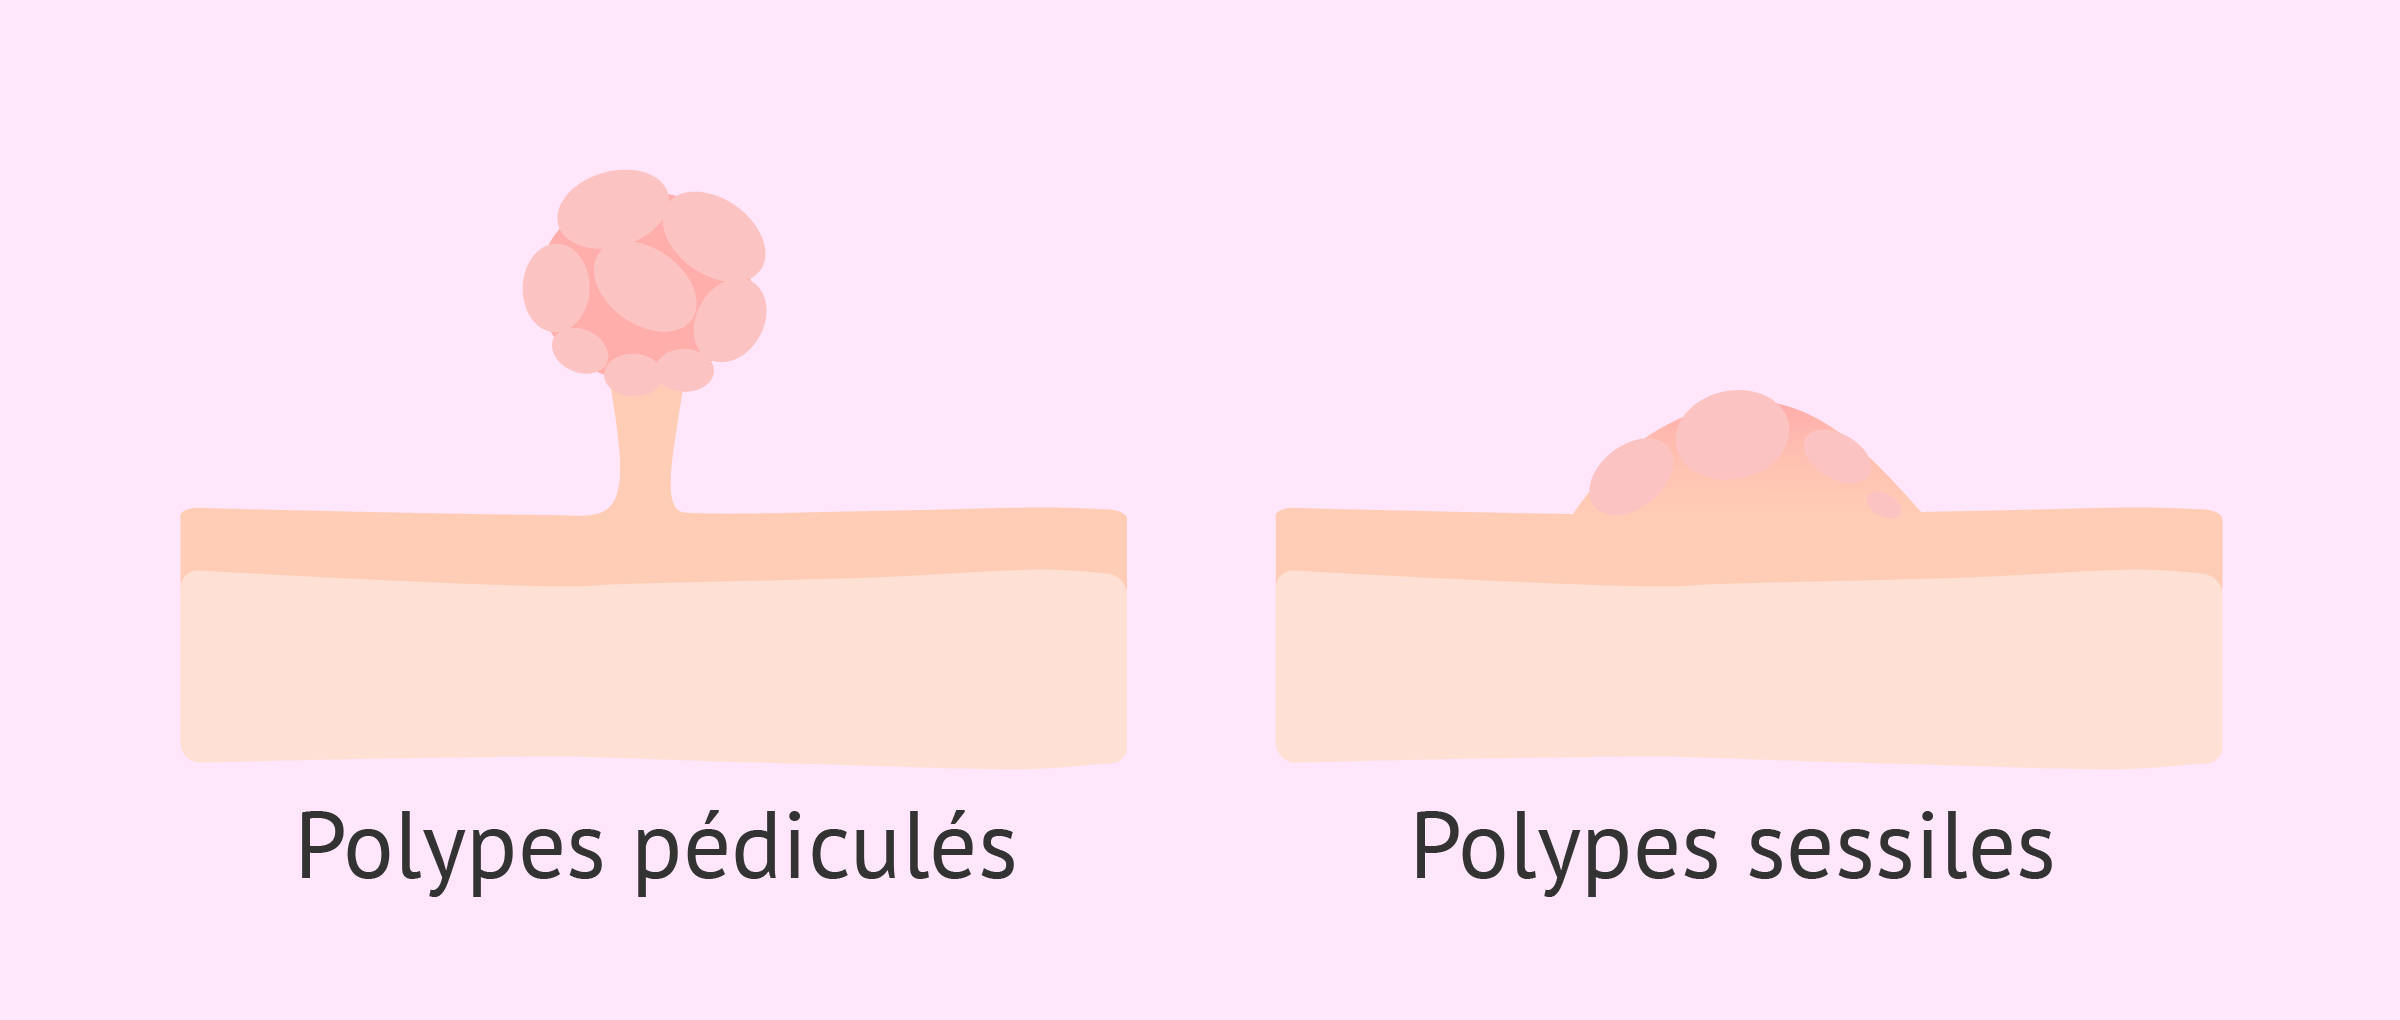 Les polypes utérins